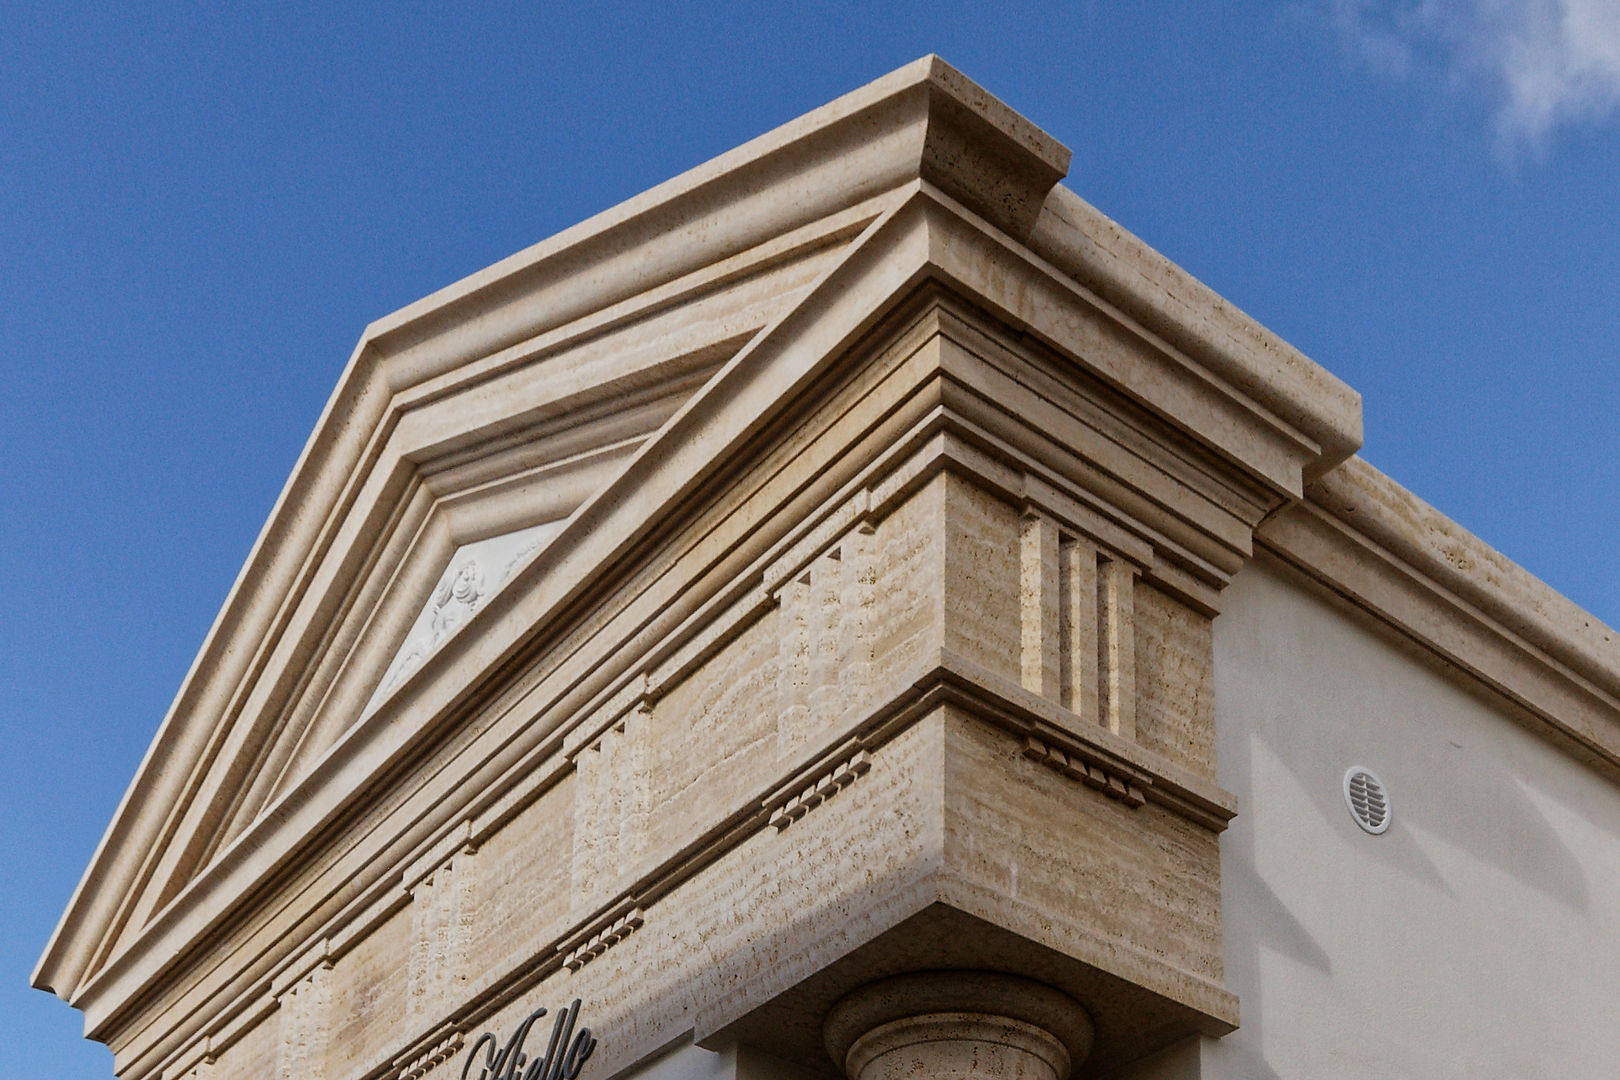 Bonus facciate 2020 - Balconi, cornicioni e portali in pietra e marmo, CusenzaMarmi CusenzaMarmi Classic style houses